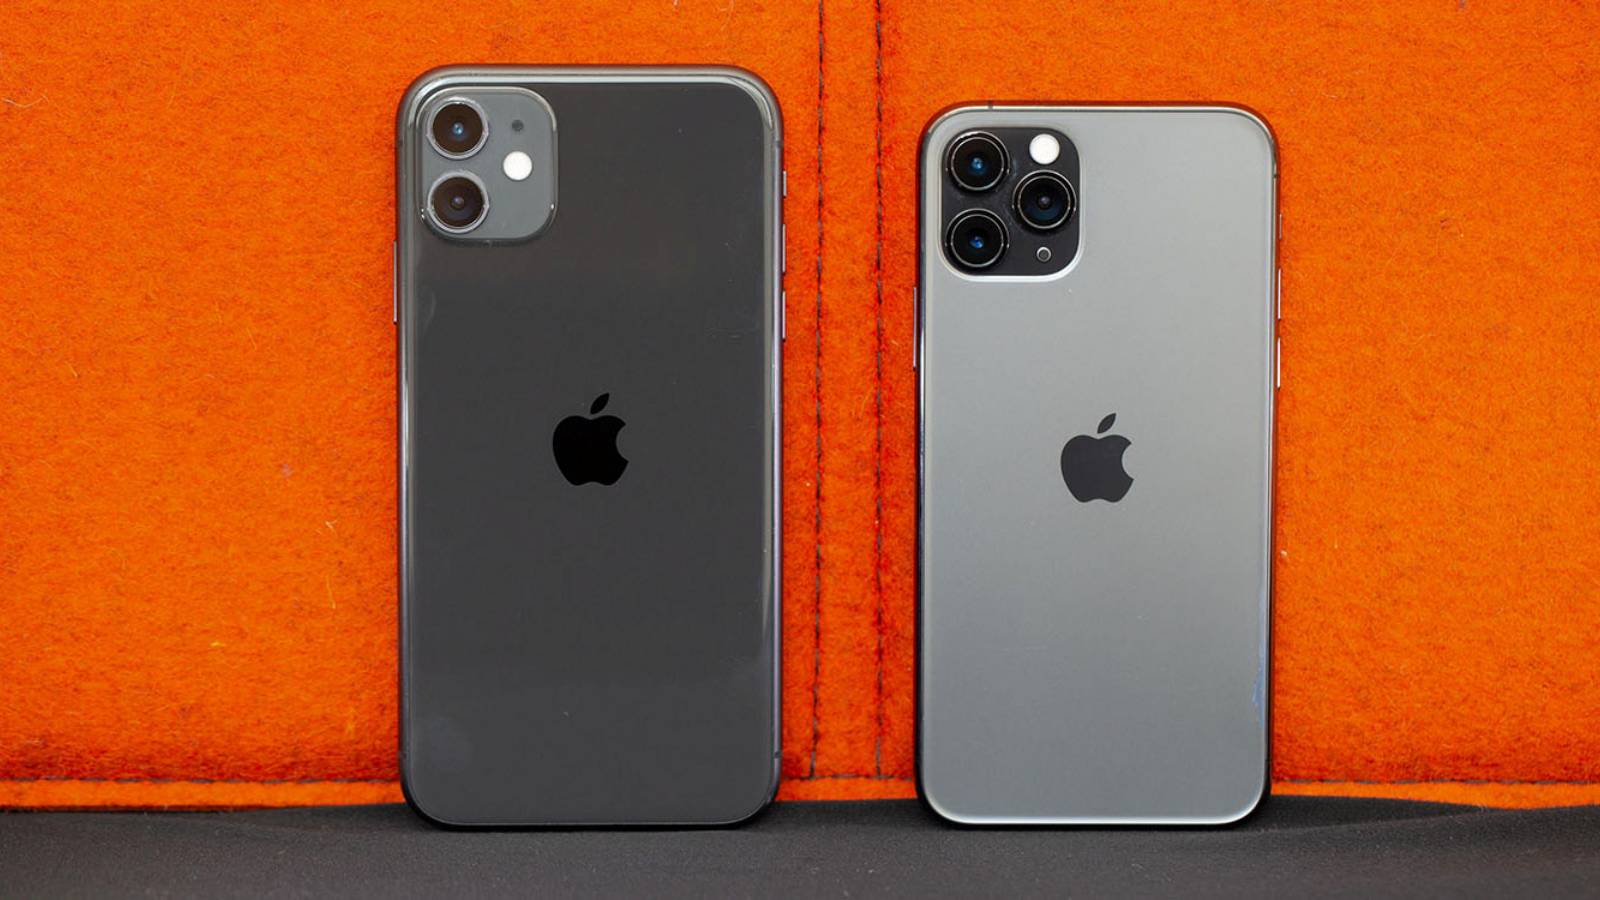 Vanzarile iPhone 11 Reusesc sa Depaseasca Asteptarile Apple